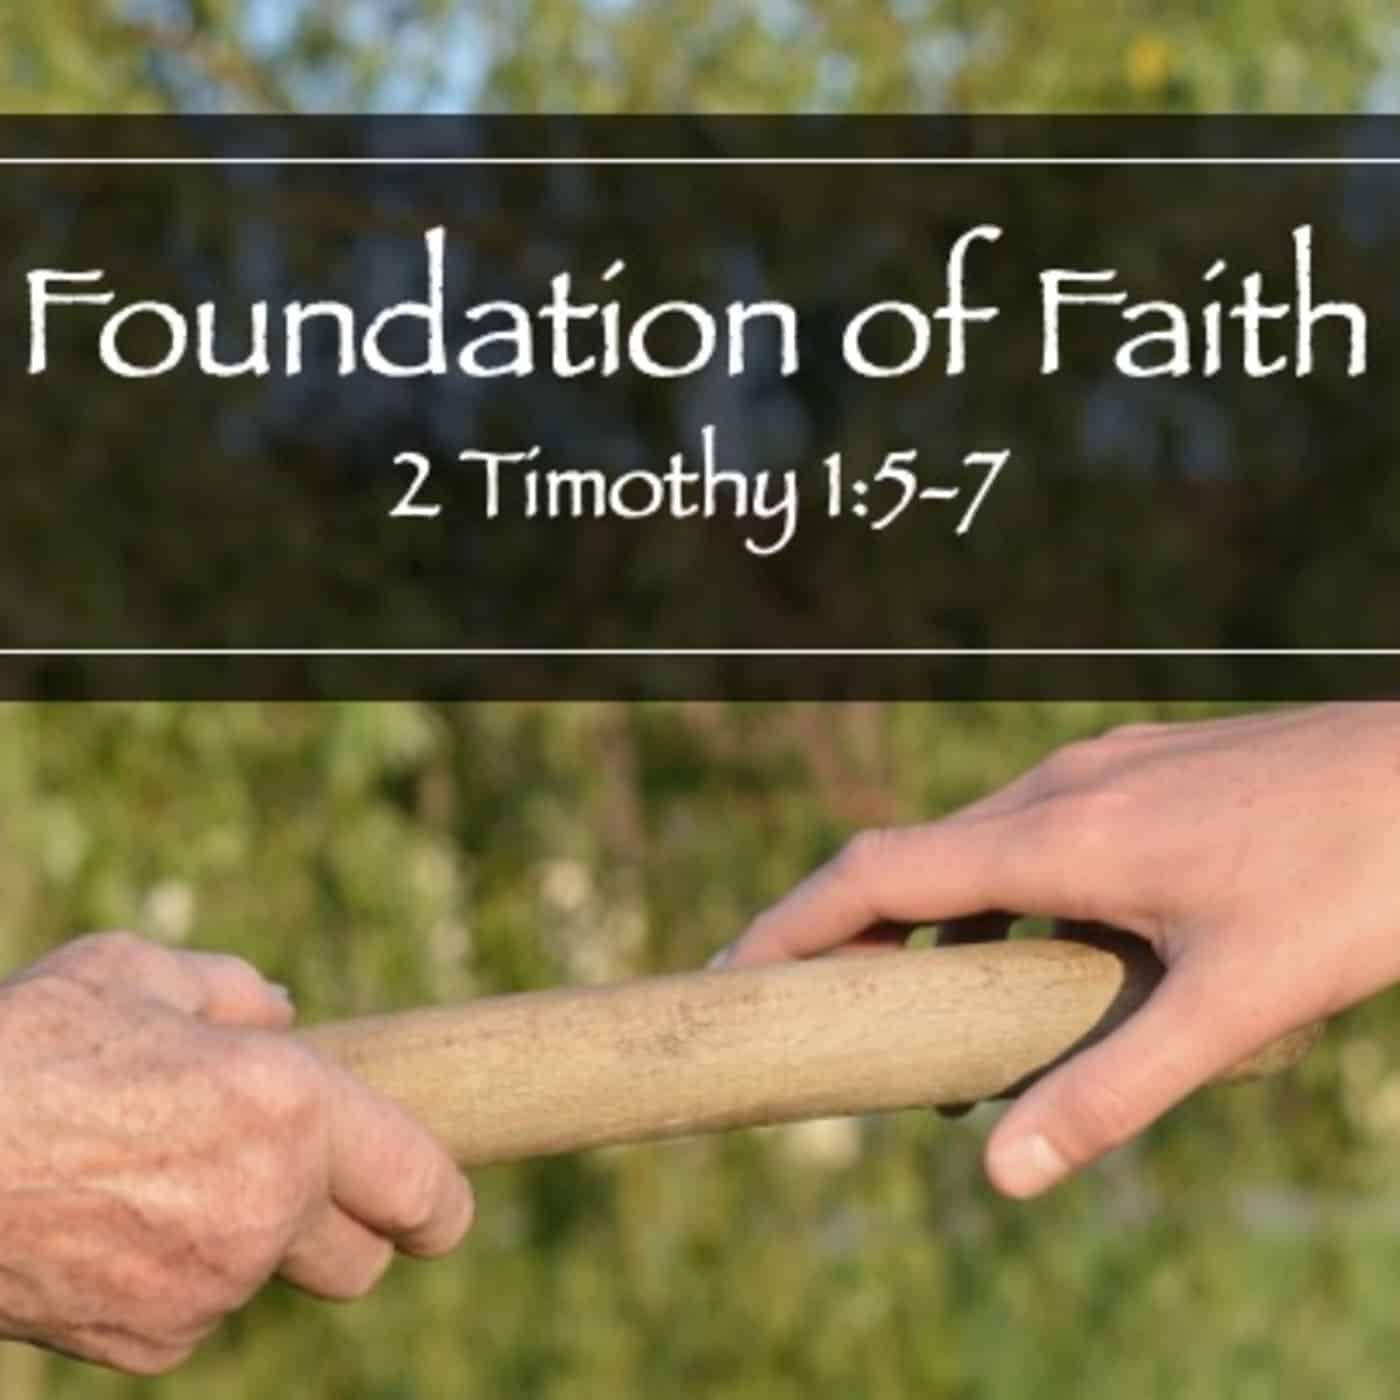 Senior Sunday: Foundation of Faith